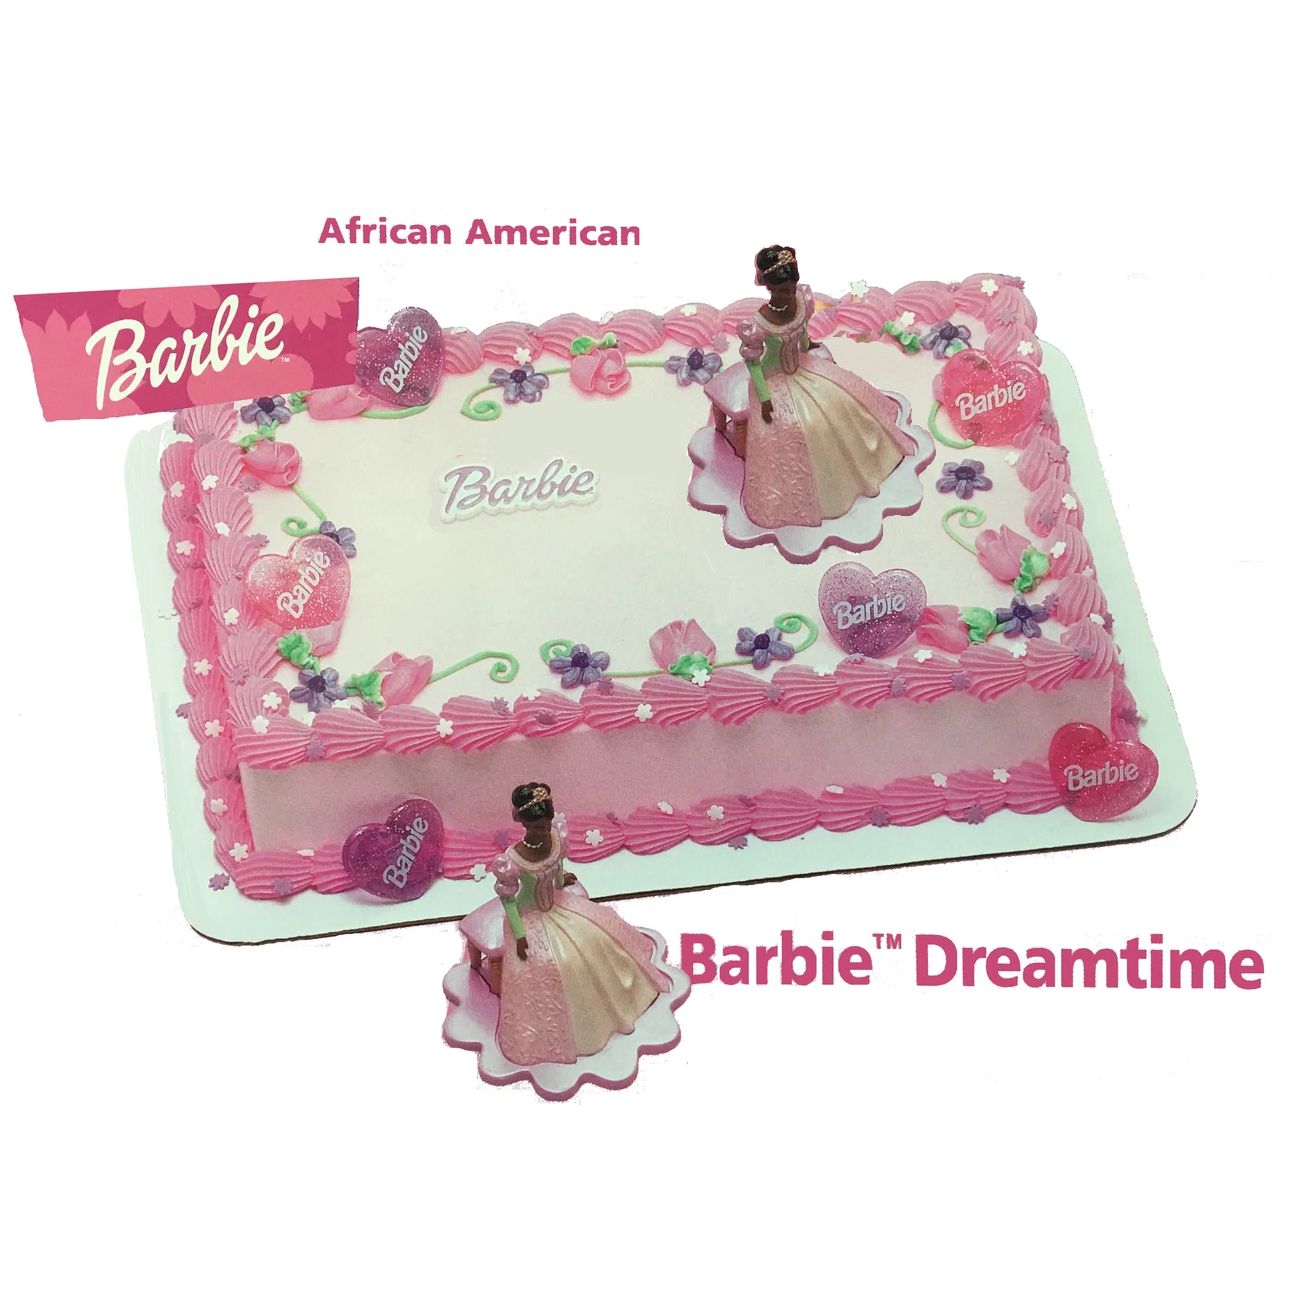 Barbie Cake | Birthday sheet cakes, Barbie cake, Barbie birthday cake